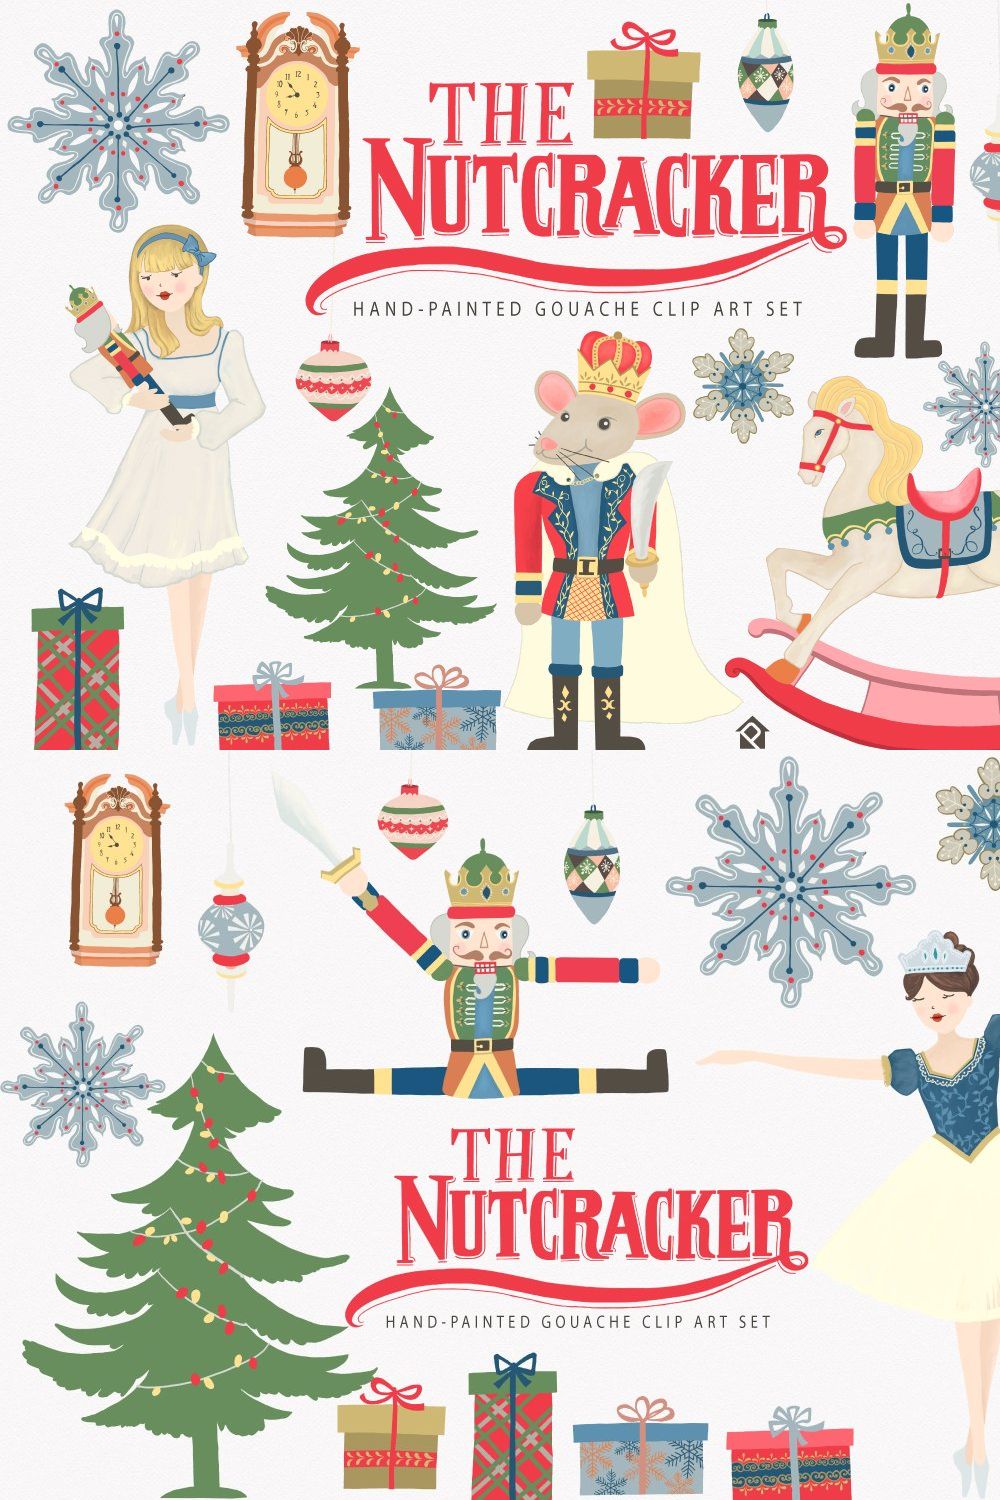 The Nutcracker Ballet Clip Art Set pinterest preview image.